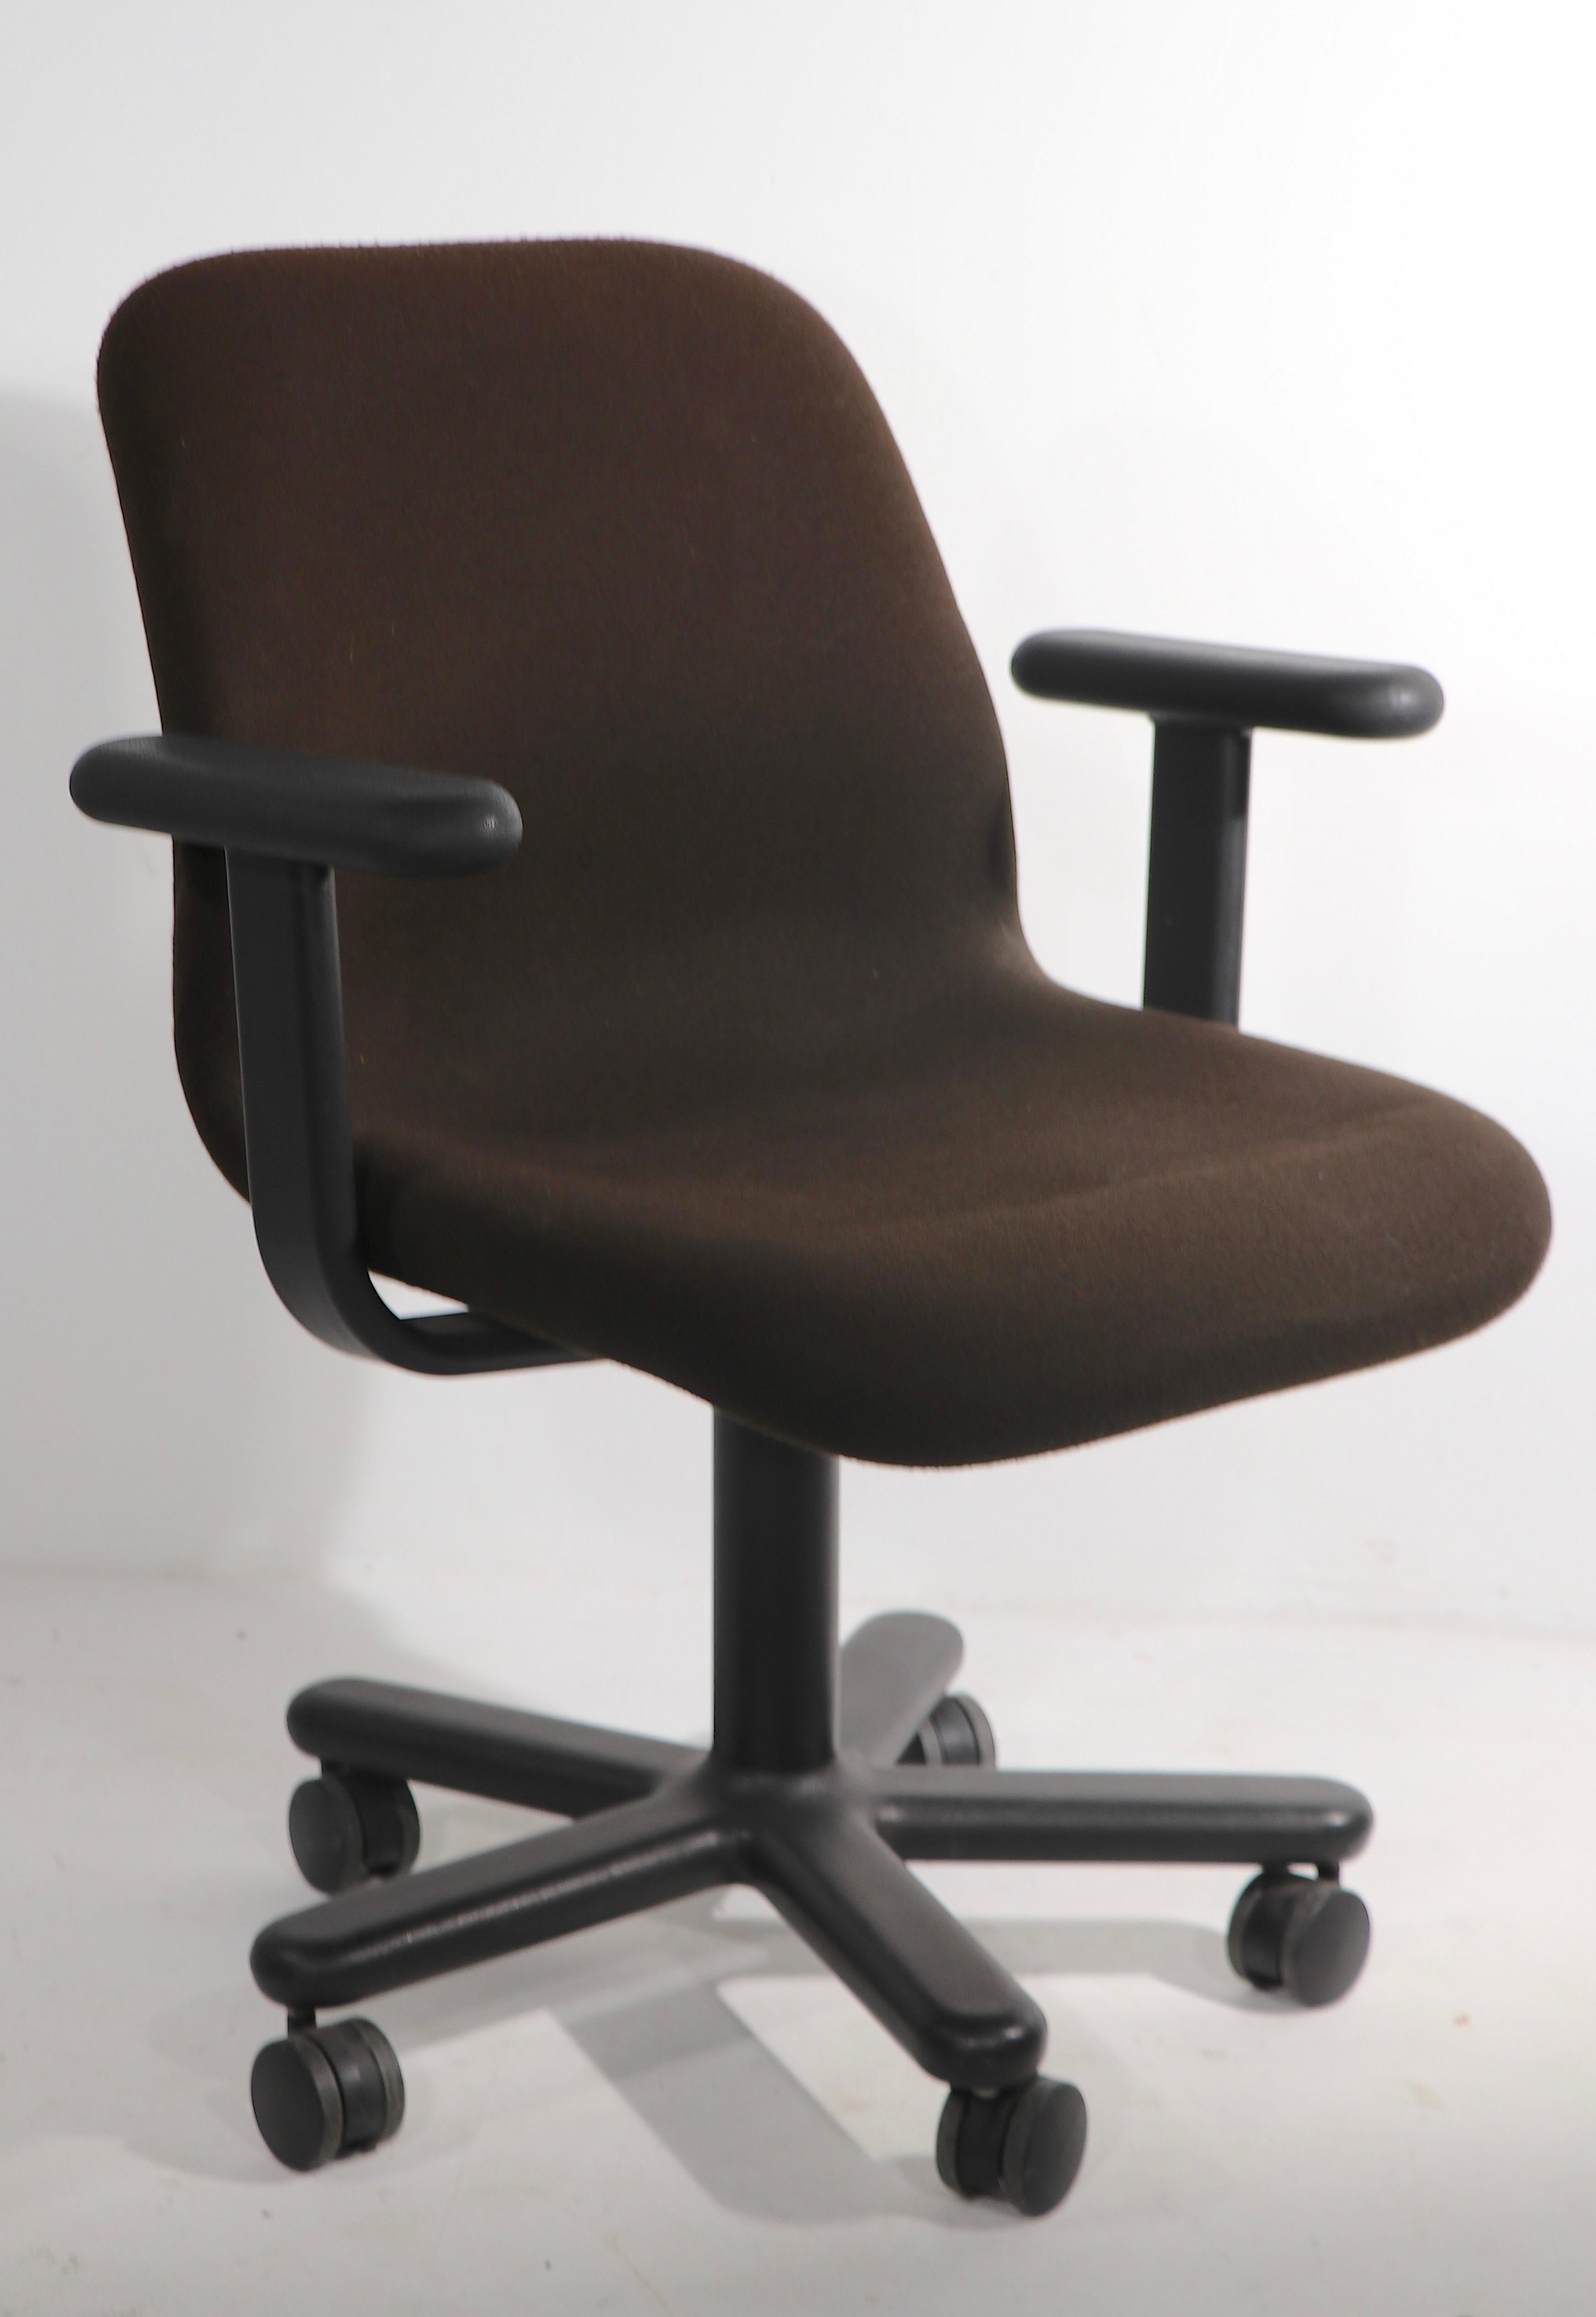 Außergewöhnliche(r) Knoll-Schreibtischdrehstuhl(e) aus den 1970er Jahren, in reicher brauner Formschaumpolsterung, auf Fünfsternfuß. Der Stuhl ist um 360° drehbar, und die Basis steht auf doppelten Rollenfüßen, was diesen ergonomischen Stuhl äußerst